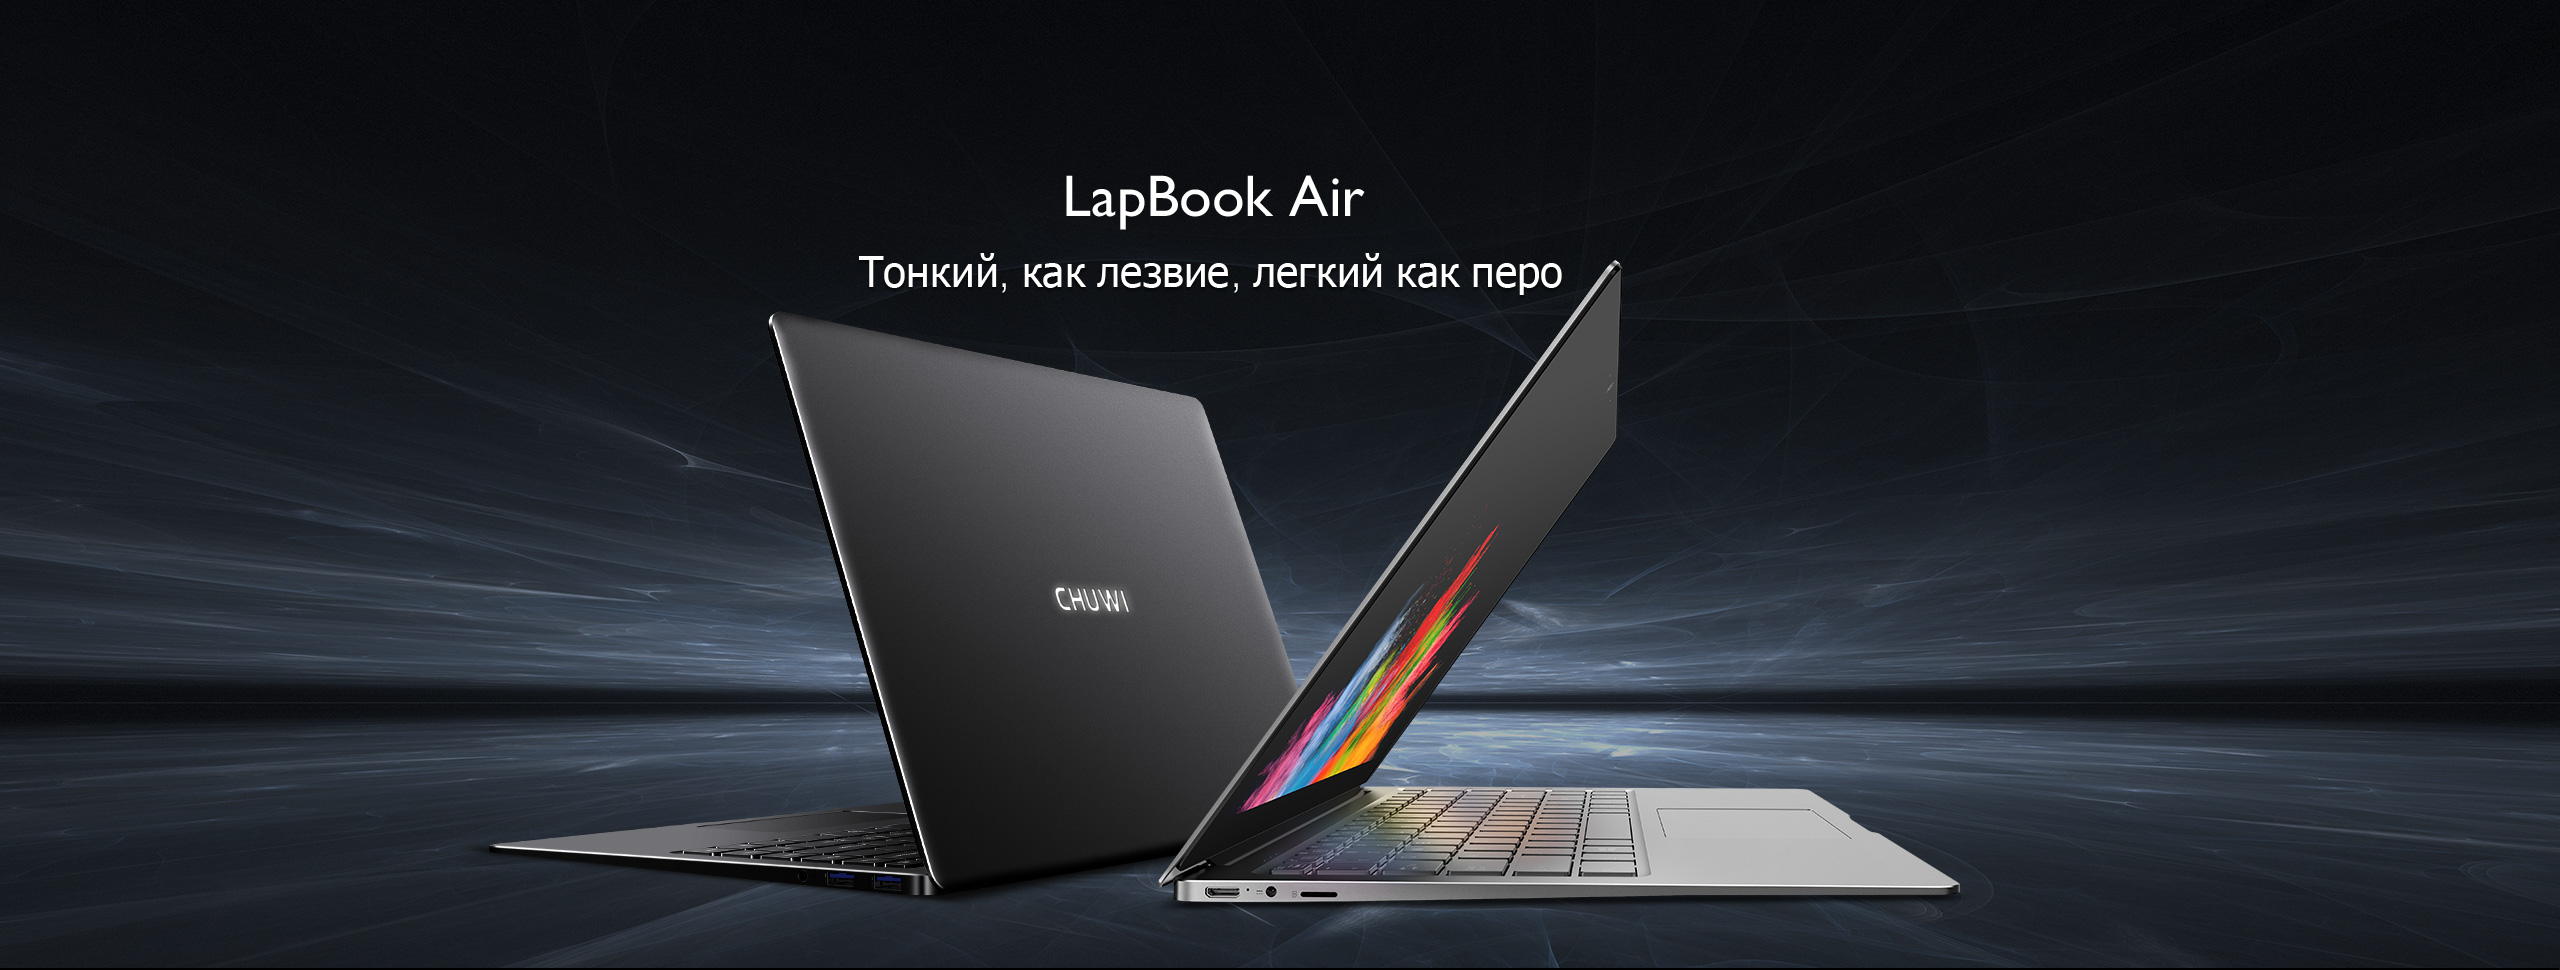 Chuwi da a conocer más detalles del lanzamiento de la Lapbook Air